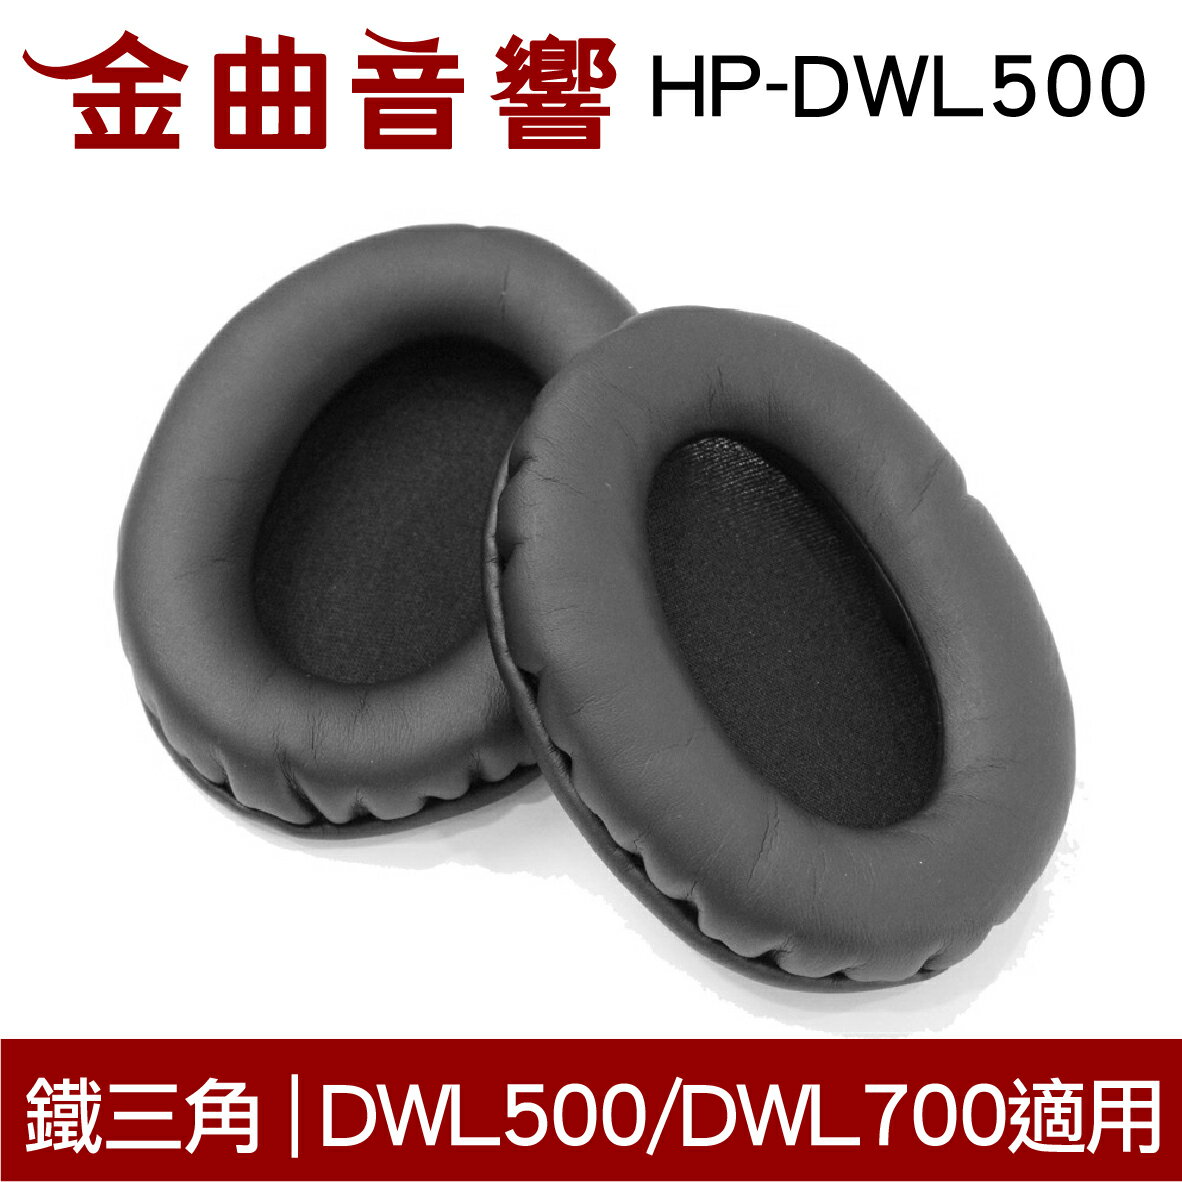 鐵三角 HP-DWL500 替換耳罩 一對 ATH-DWL500 DWL700 適用 | 金曲音響